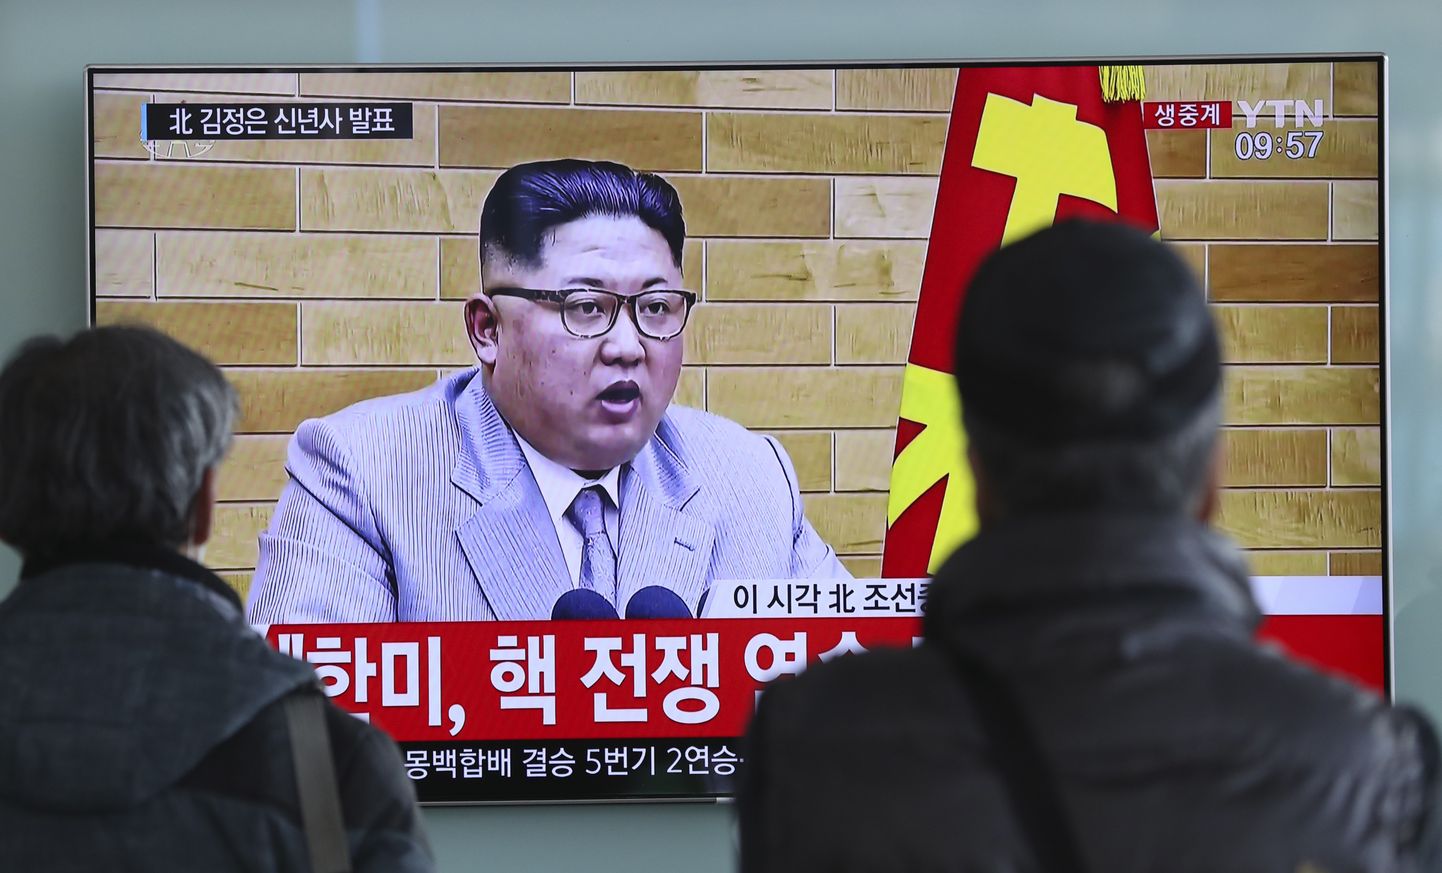 Граждане Южной Кореи смотрят новогоднюю речь Ким Чен Ына.